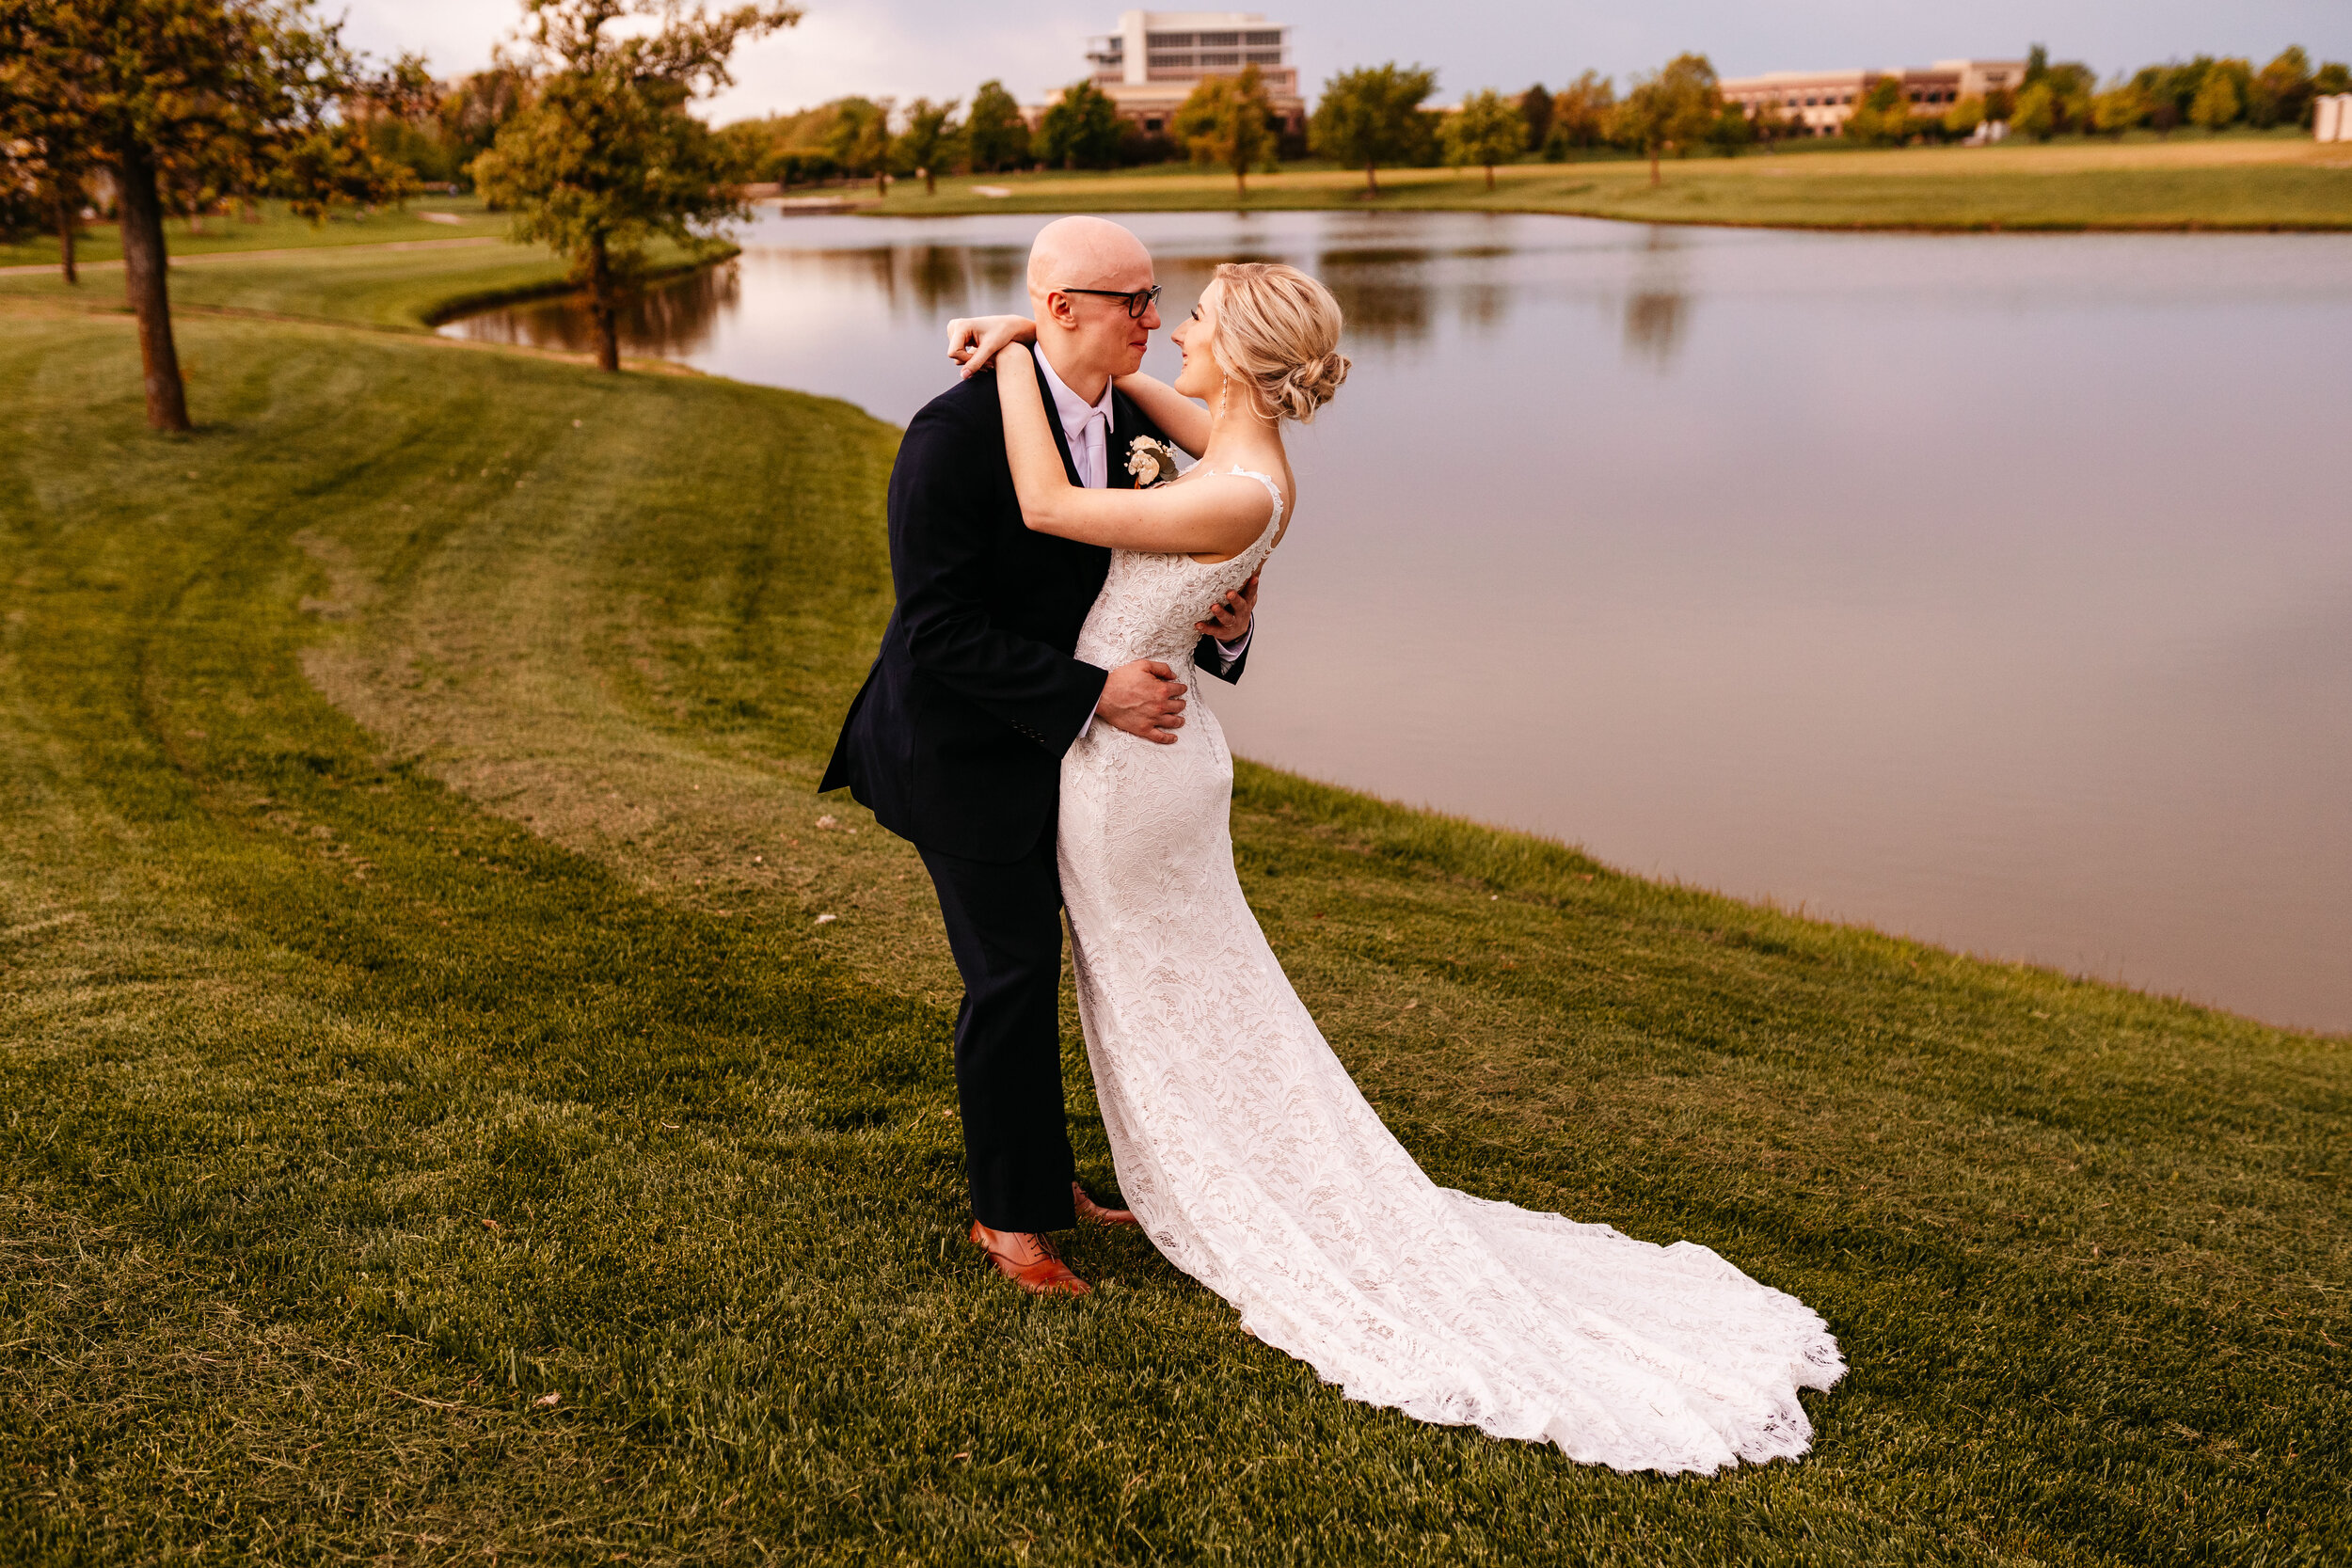 Amber + Nick - Modern Spring Wedding at Noah's Wichita, Kansas130.jpg